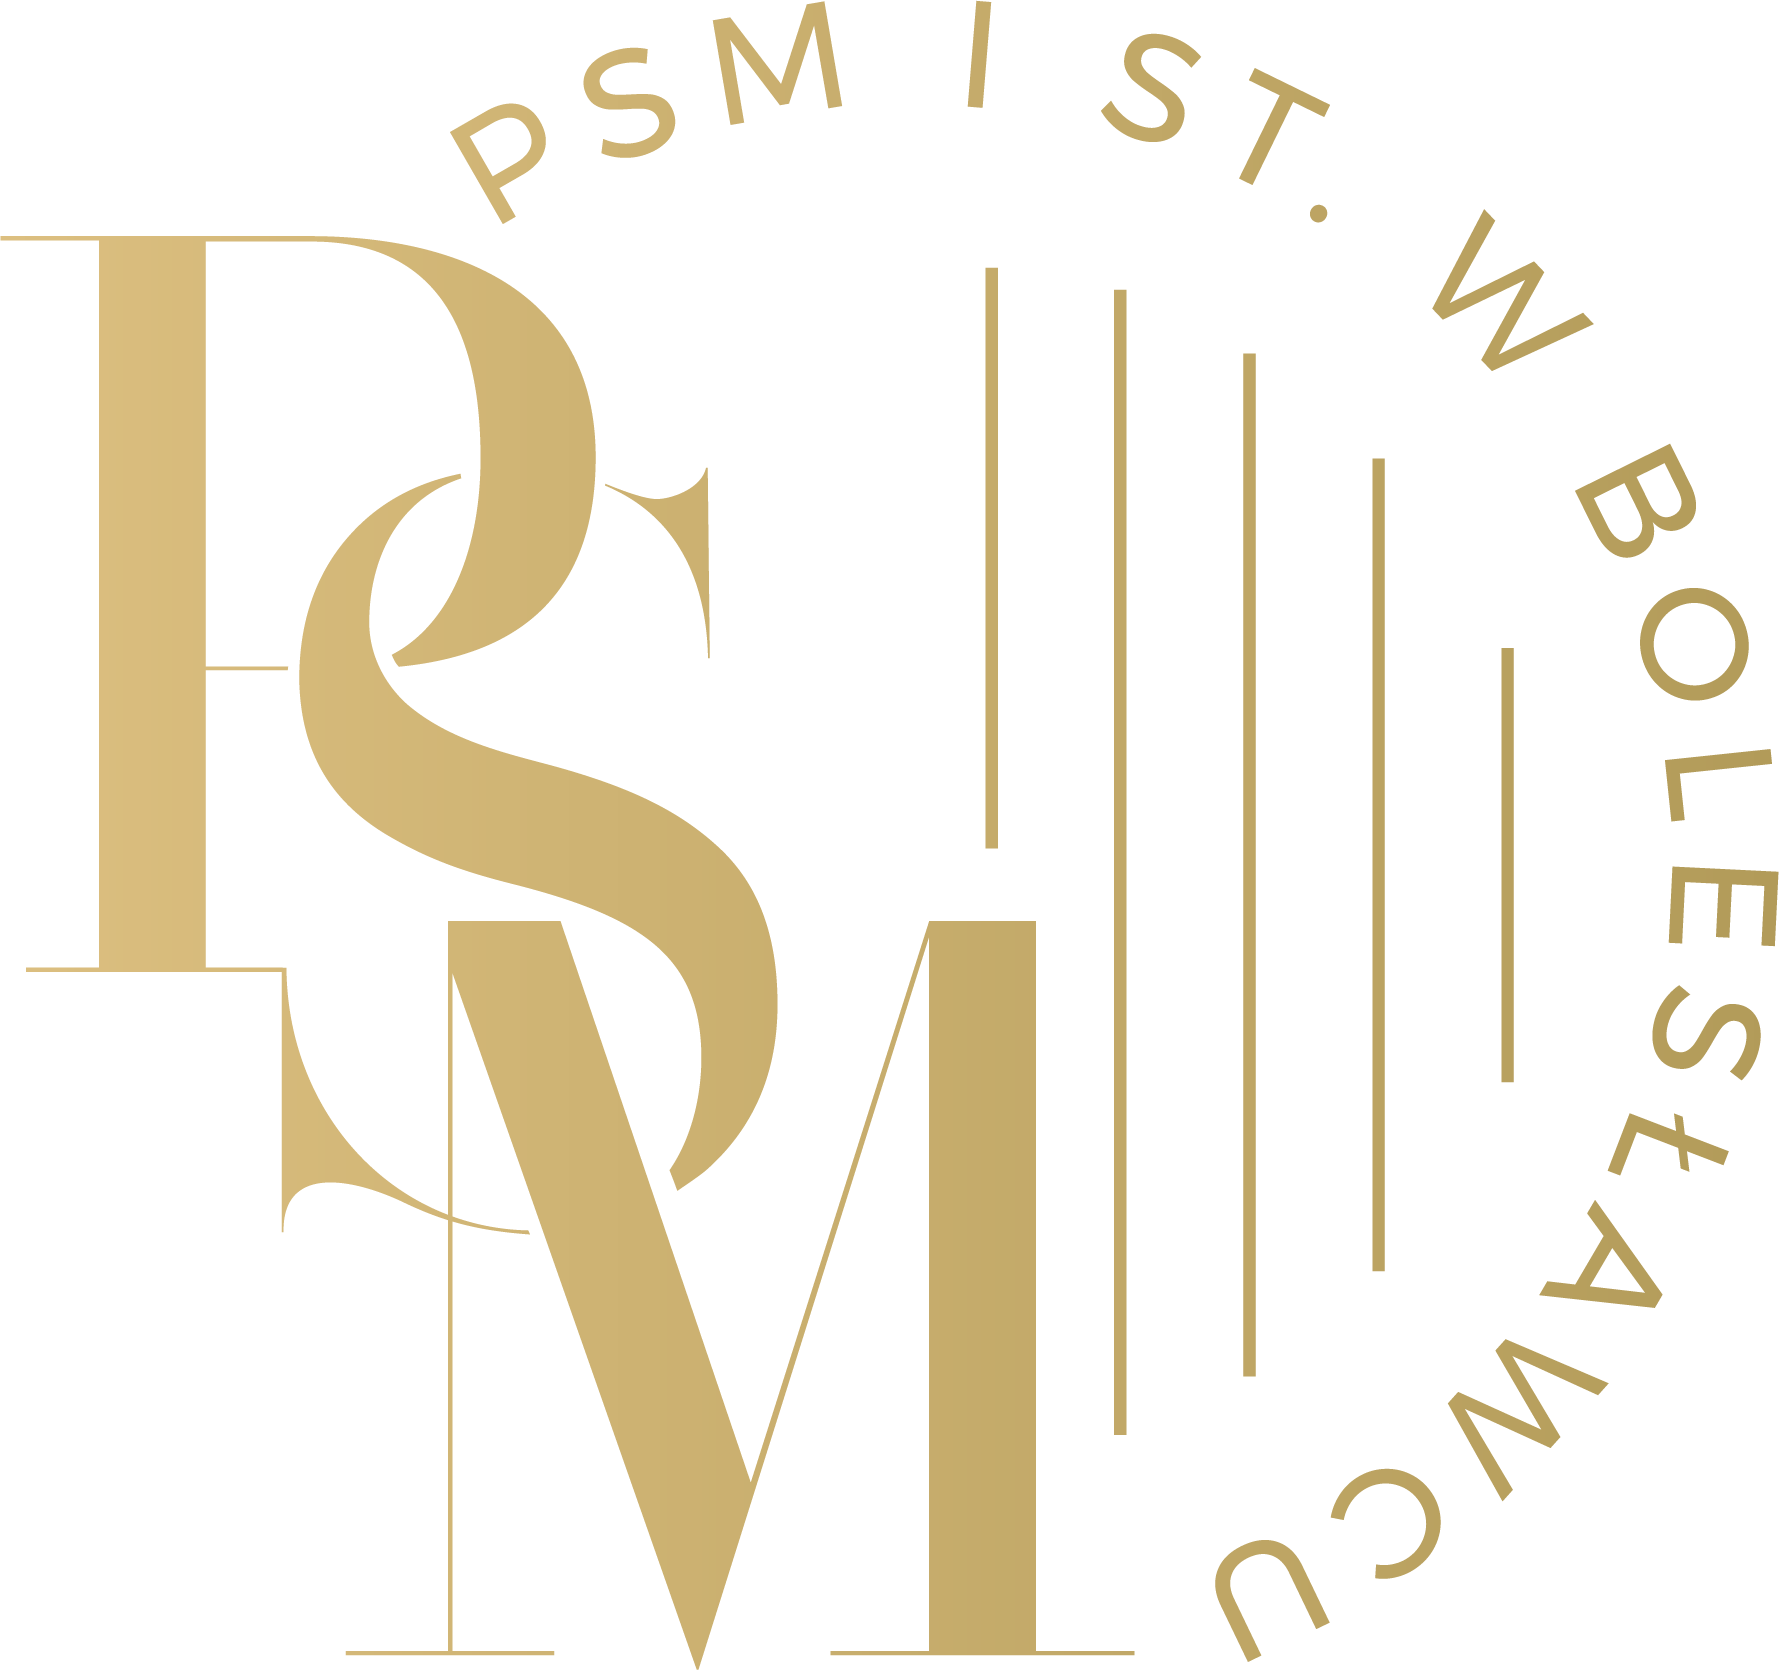 Logo na bazie okręgu w złotej kolorystce. Składa się z napisu PSM z pięcioma liniami symbolizującymi pismo nutowe i dodatkowego napisu PSM I st. w Bolesławcu na bazie okręgu.